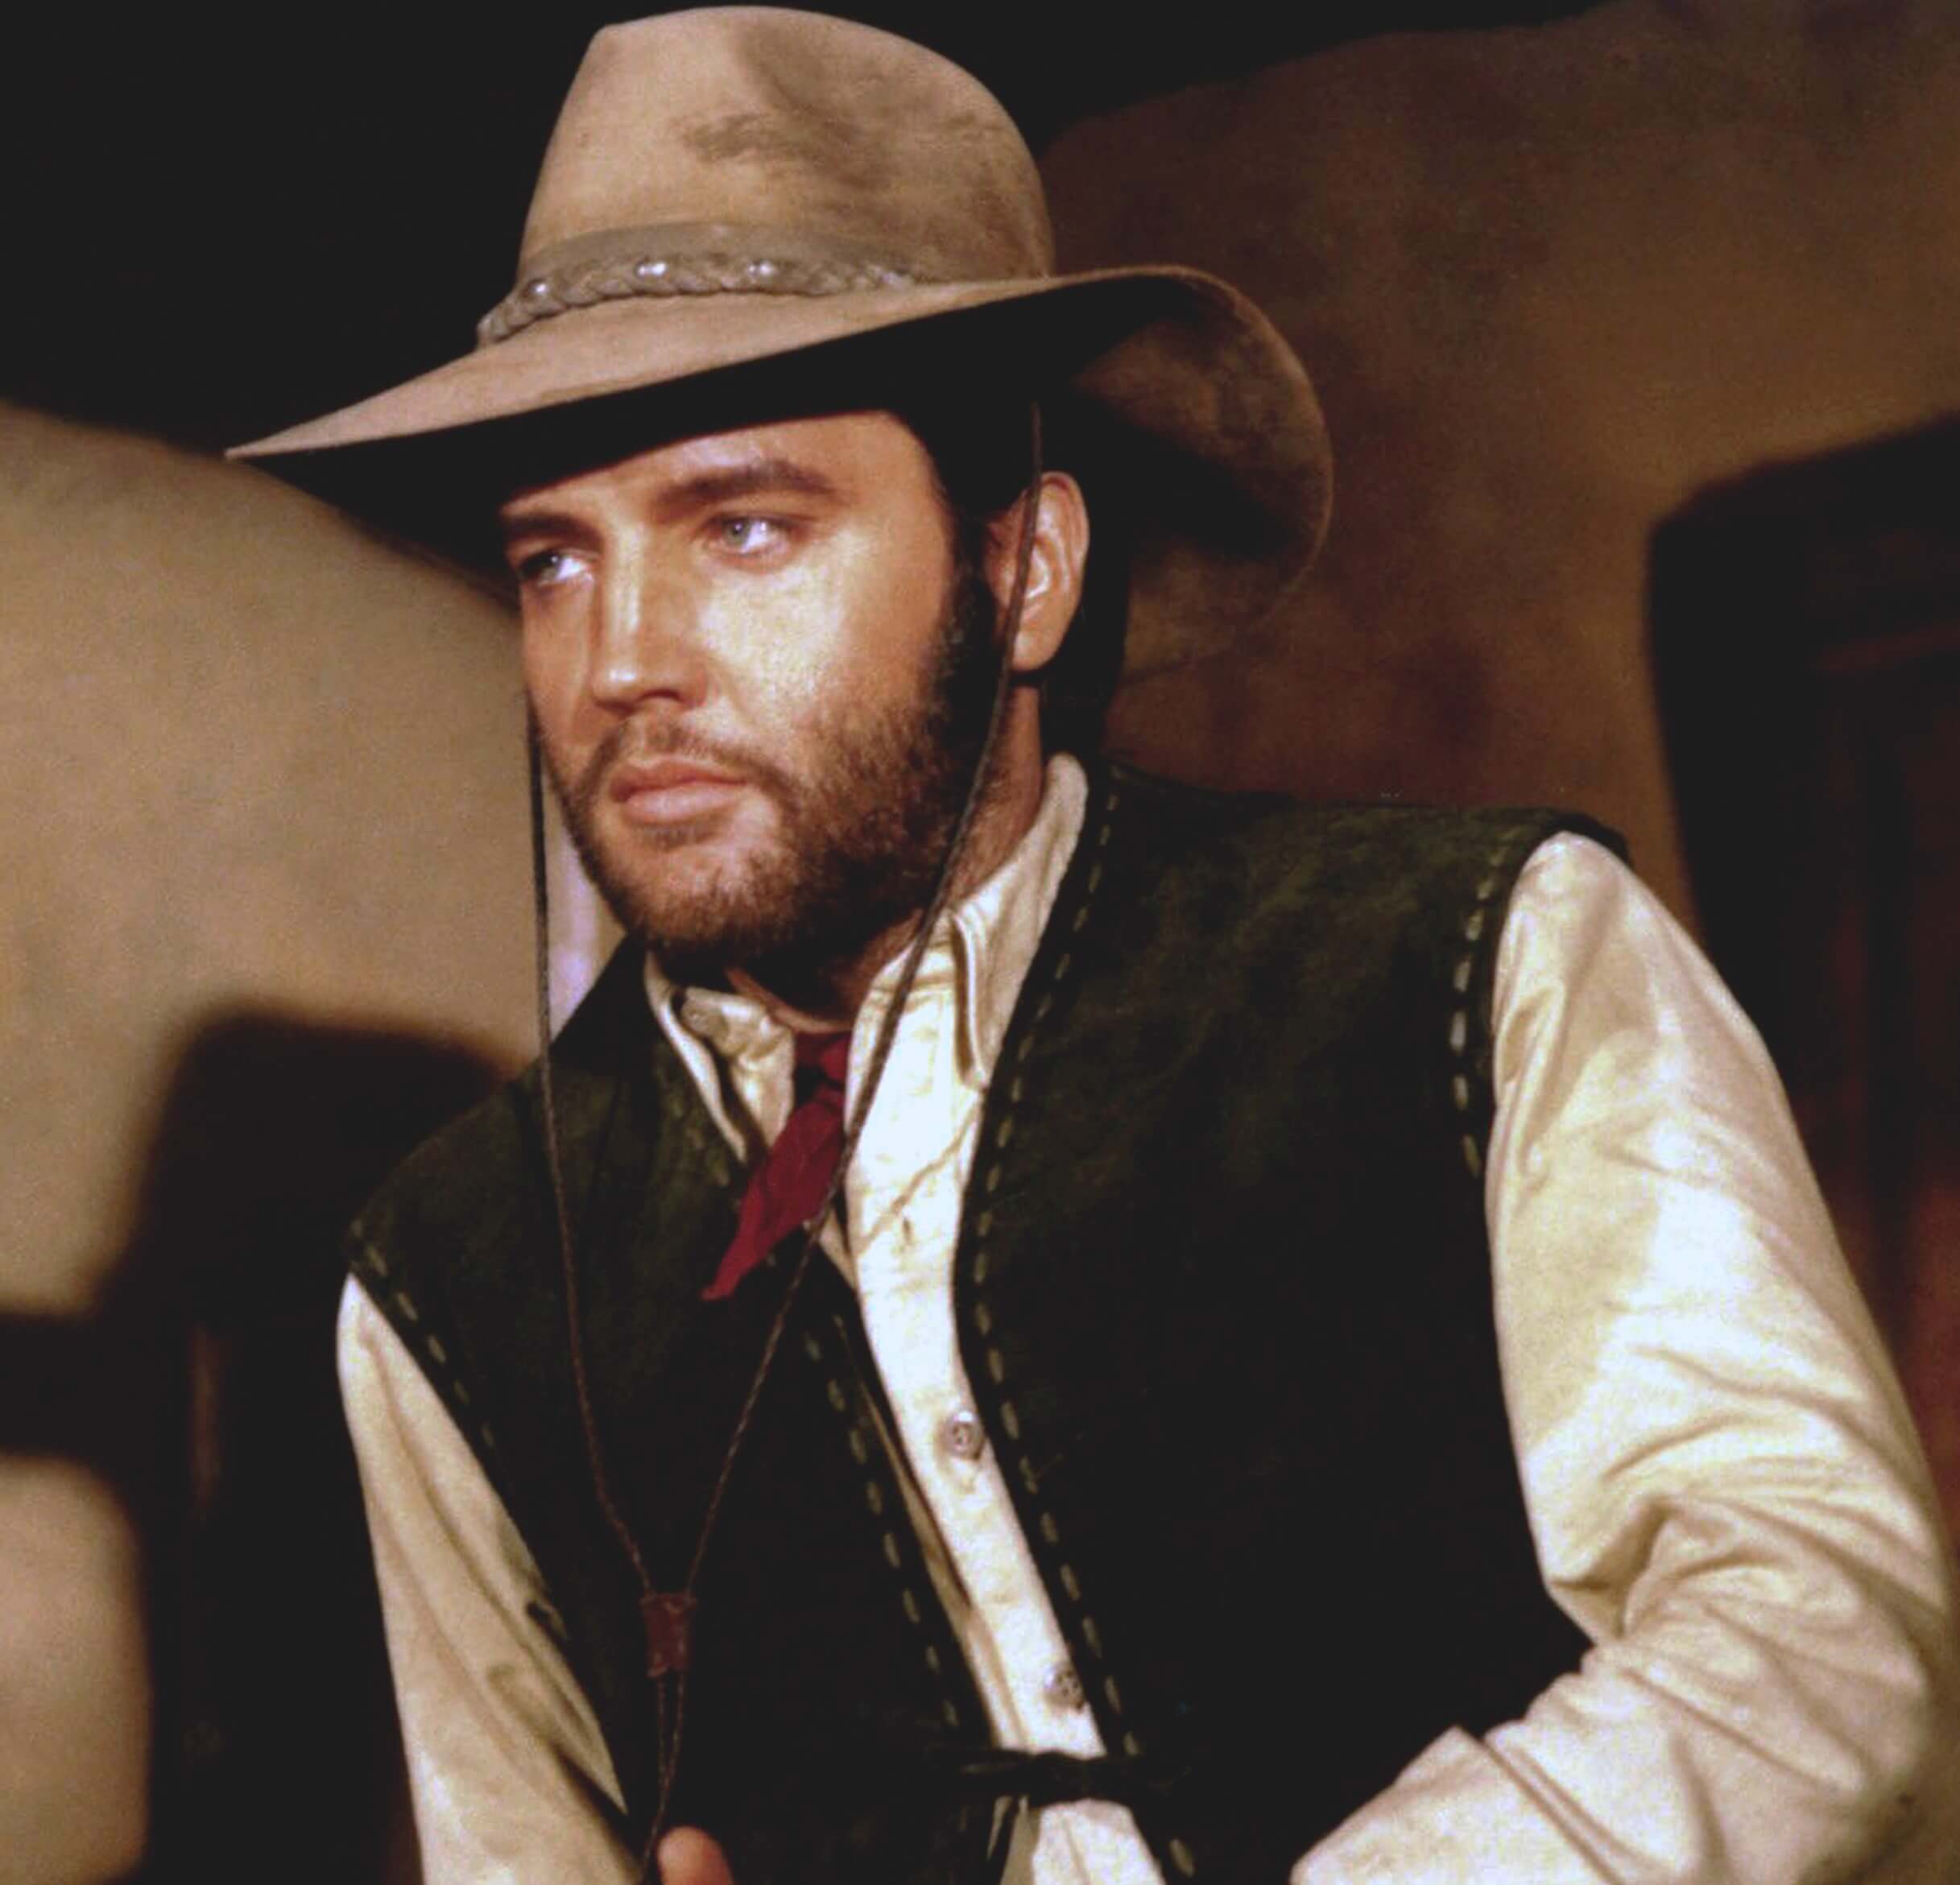 Elvis Presley dressed as a cowboy